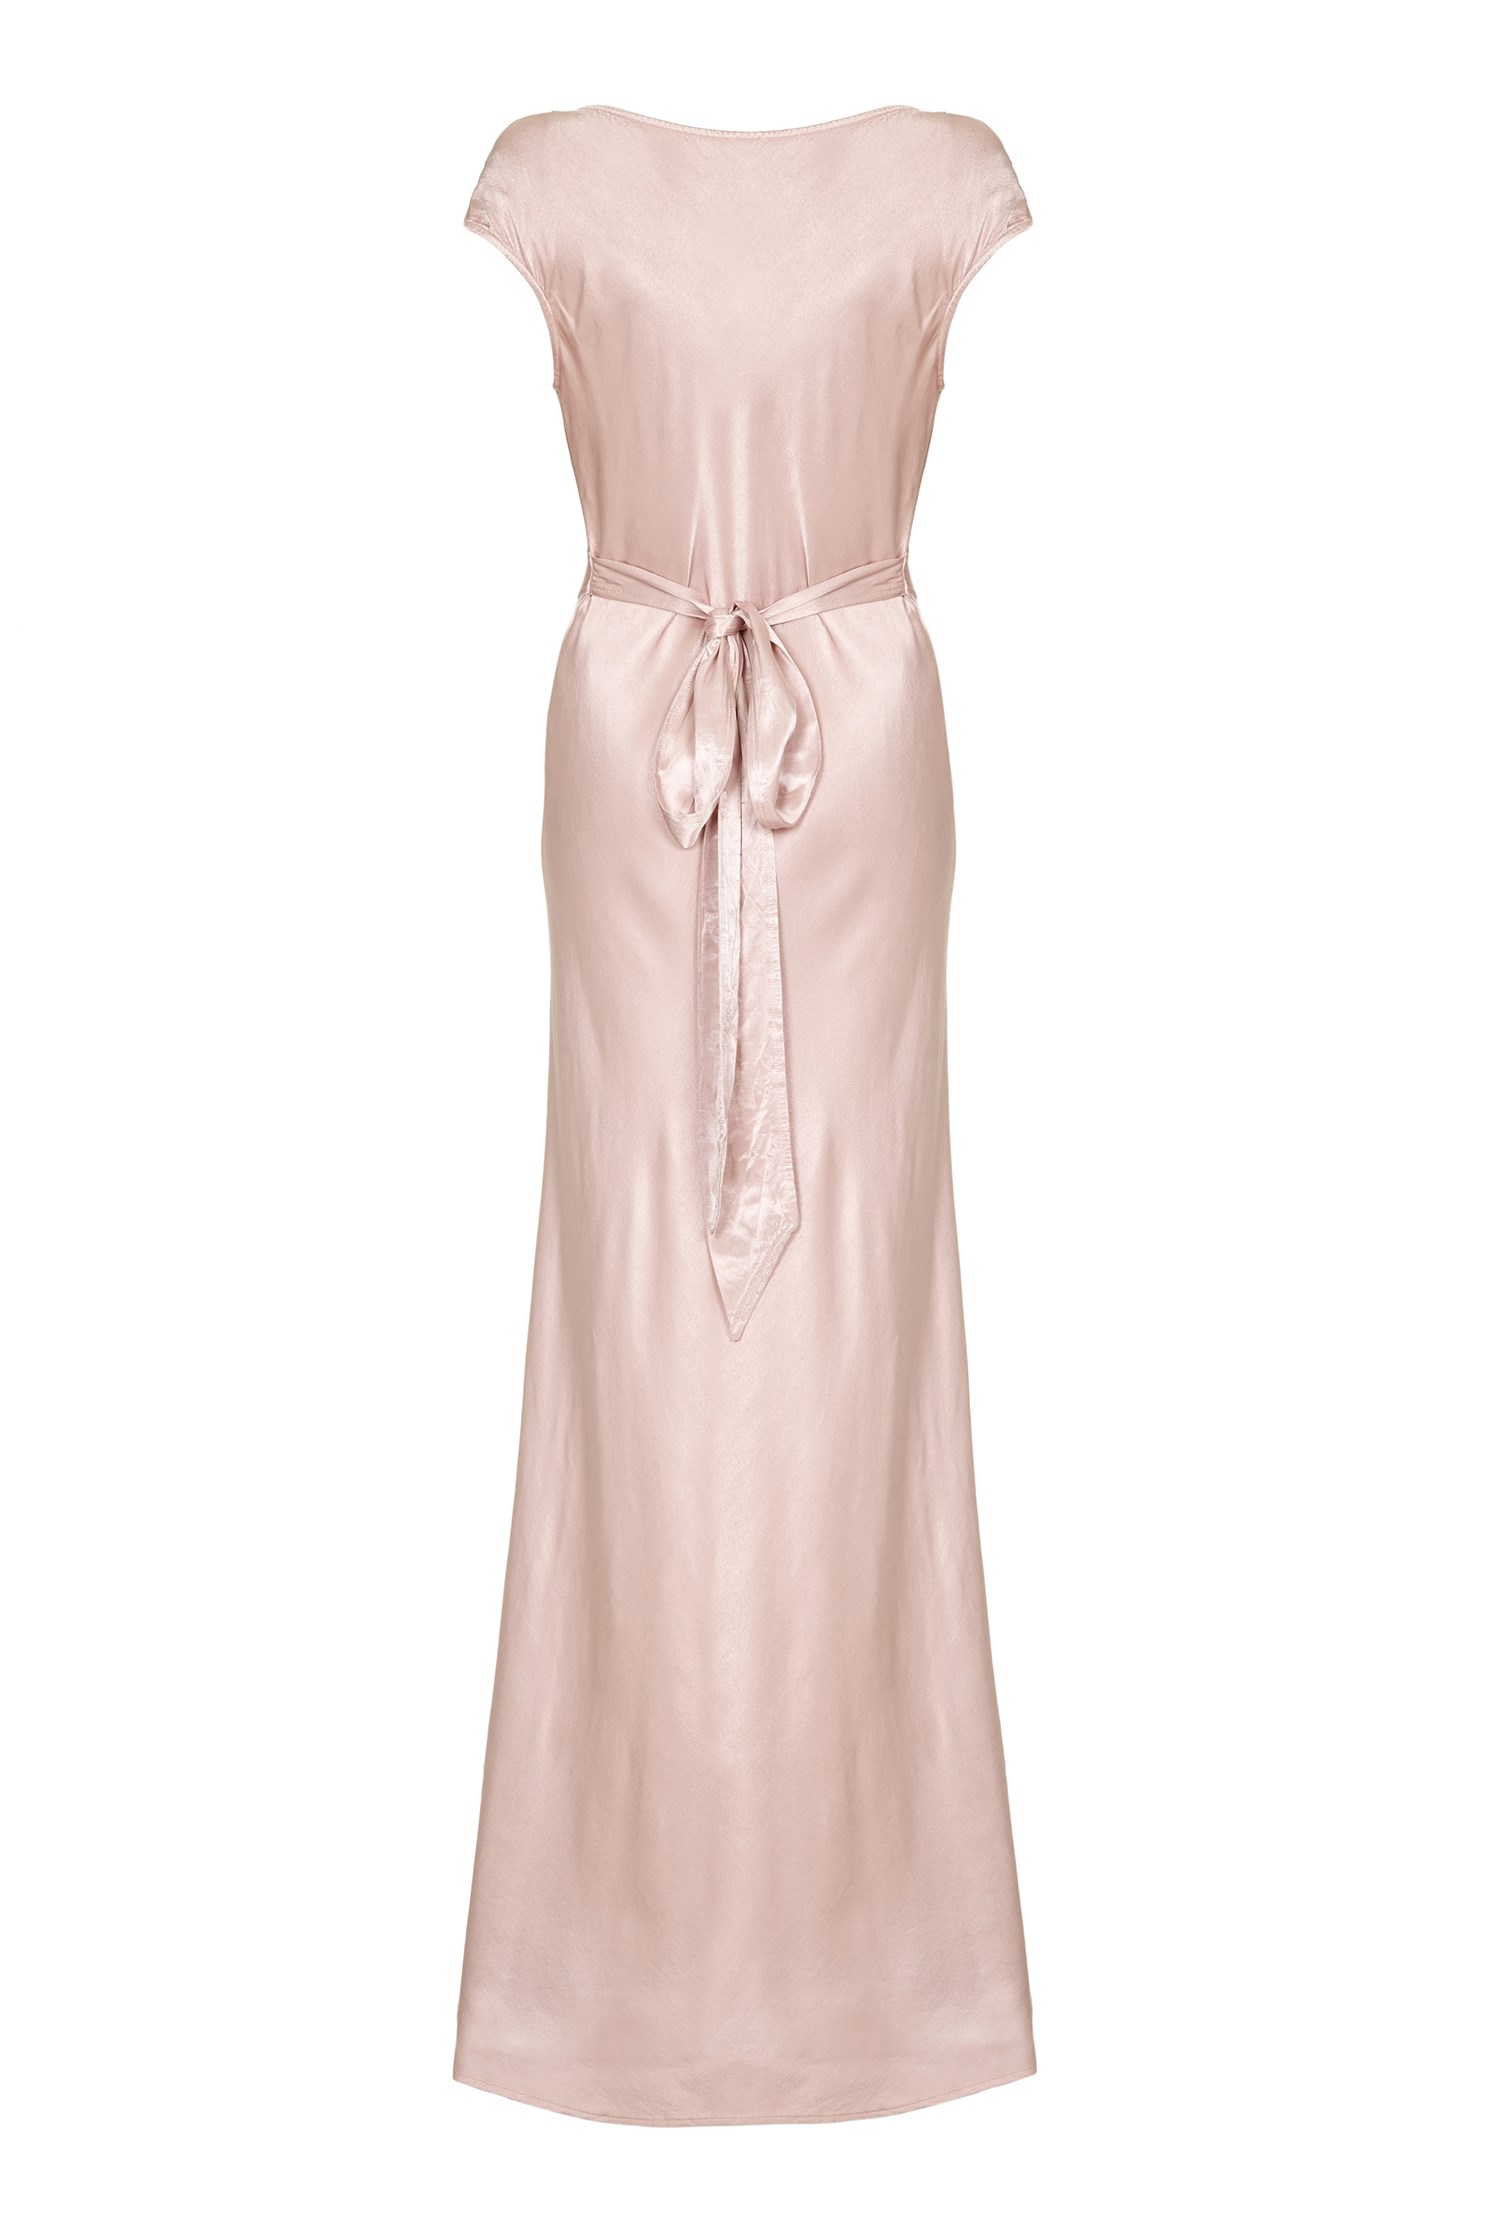 Fern Dress Boudoir Pink | Ghost.co.uk